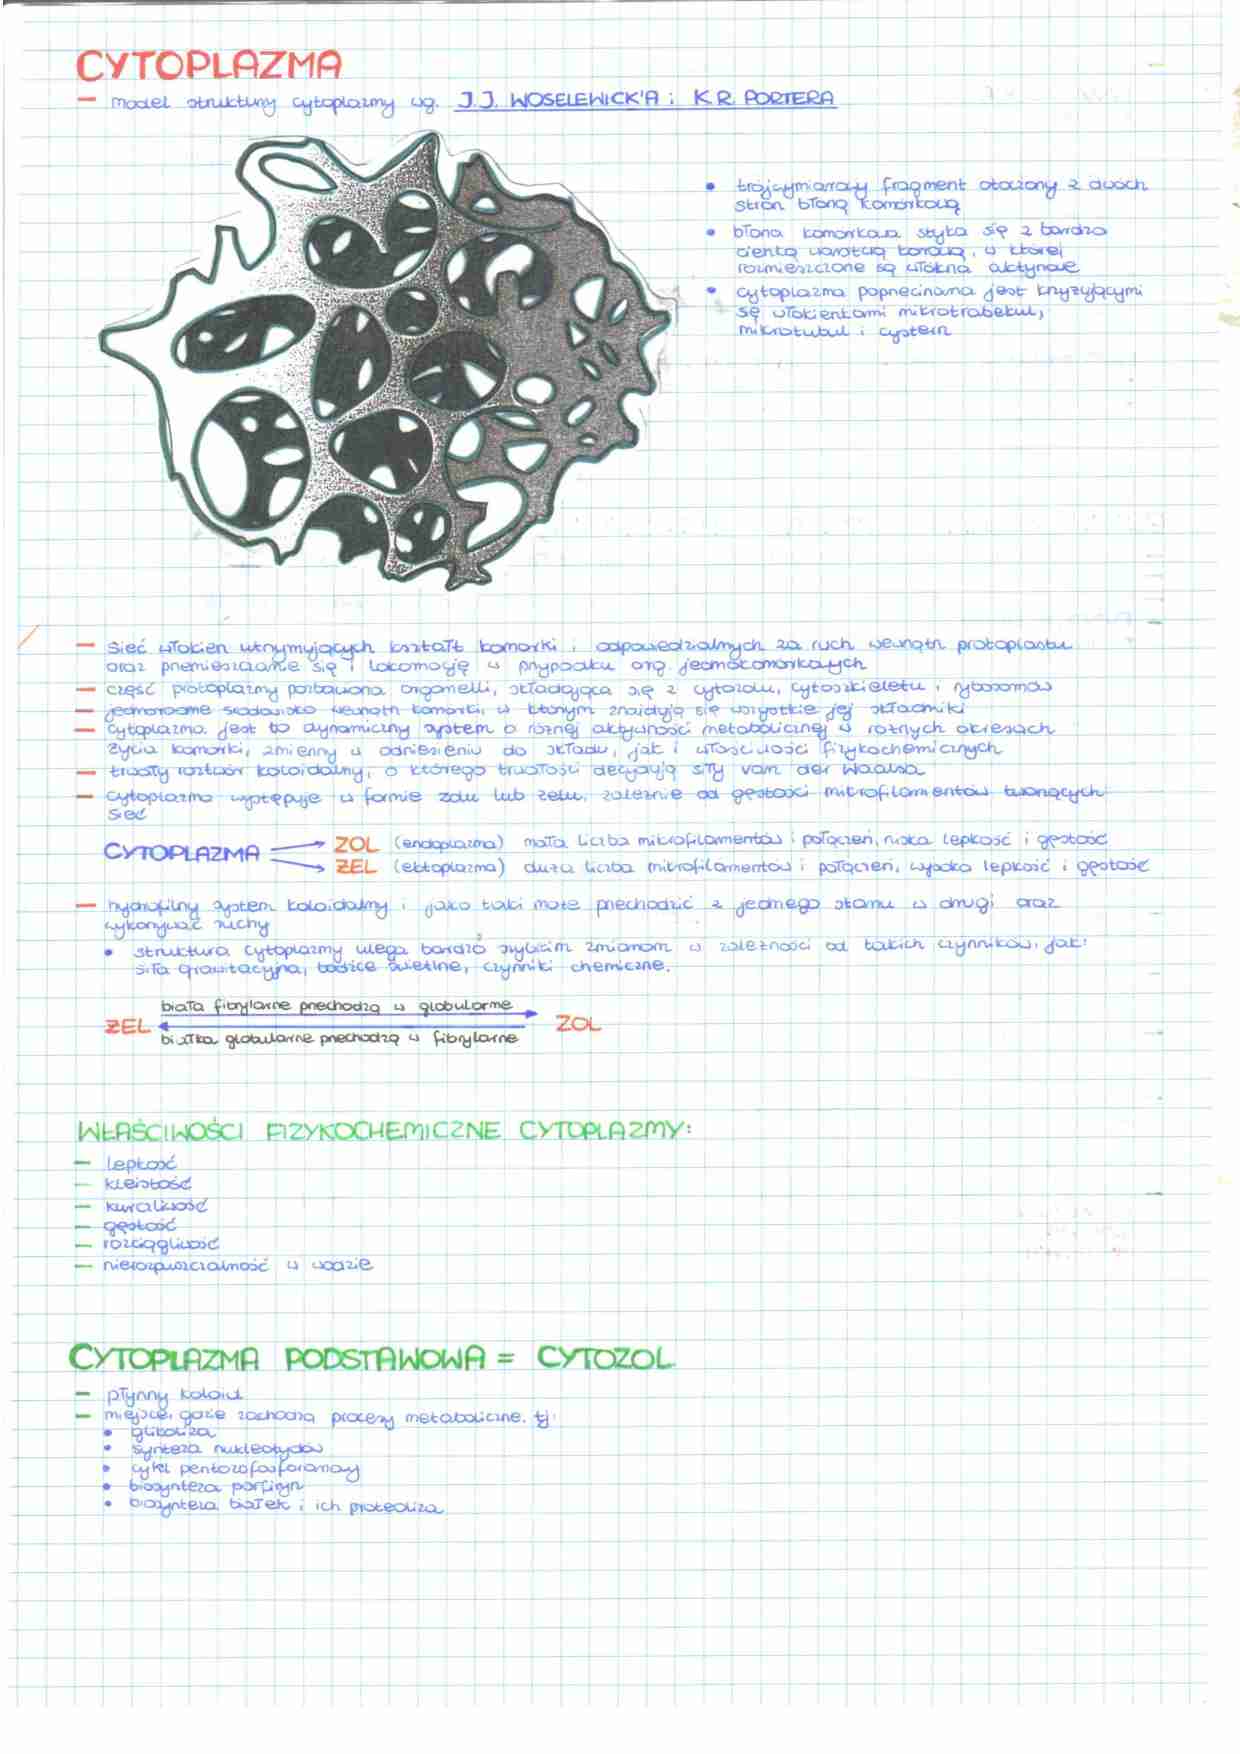 Budowa komórki - cytoplazma - strona 1